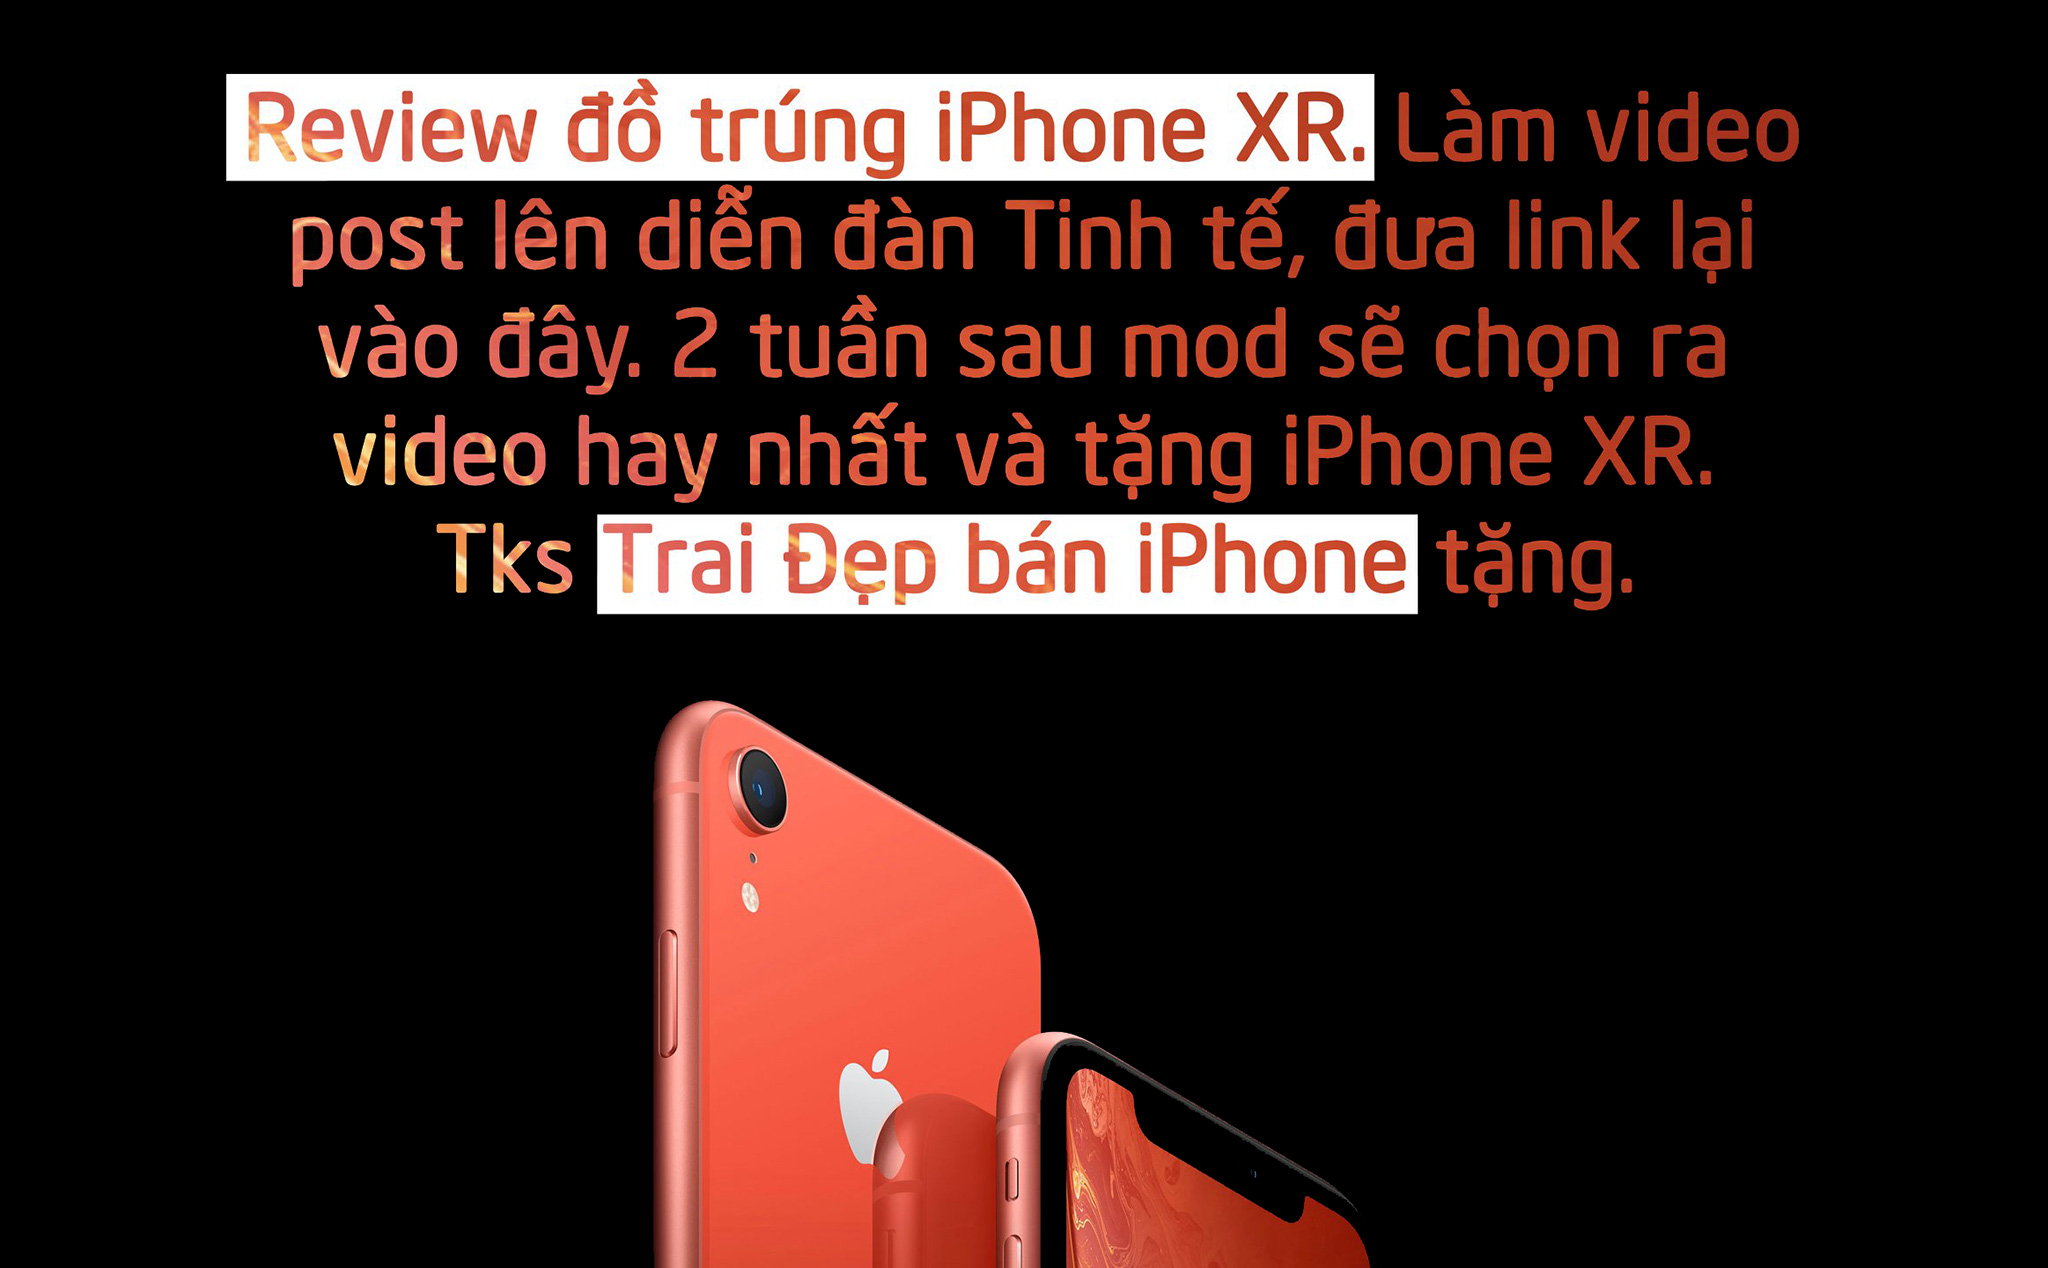 Thi Review đồ công nghệ trúng iPhone XR